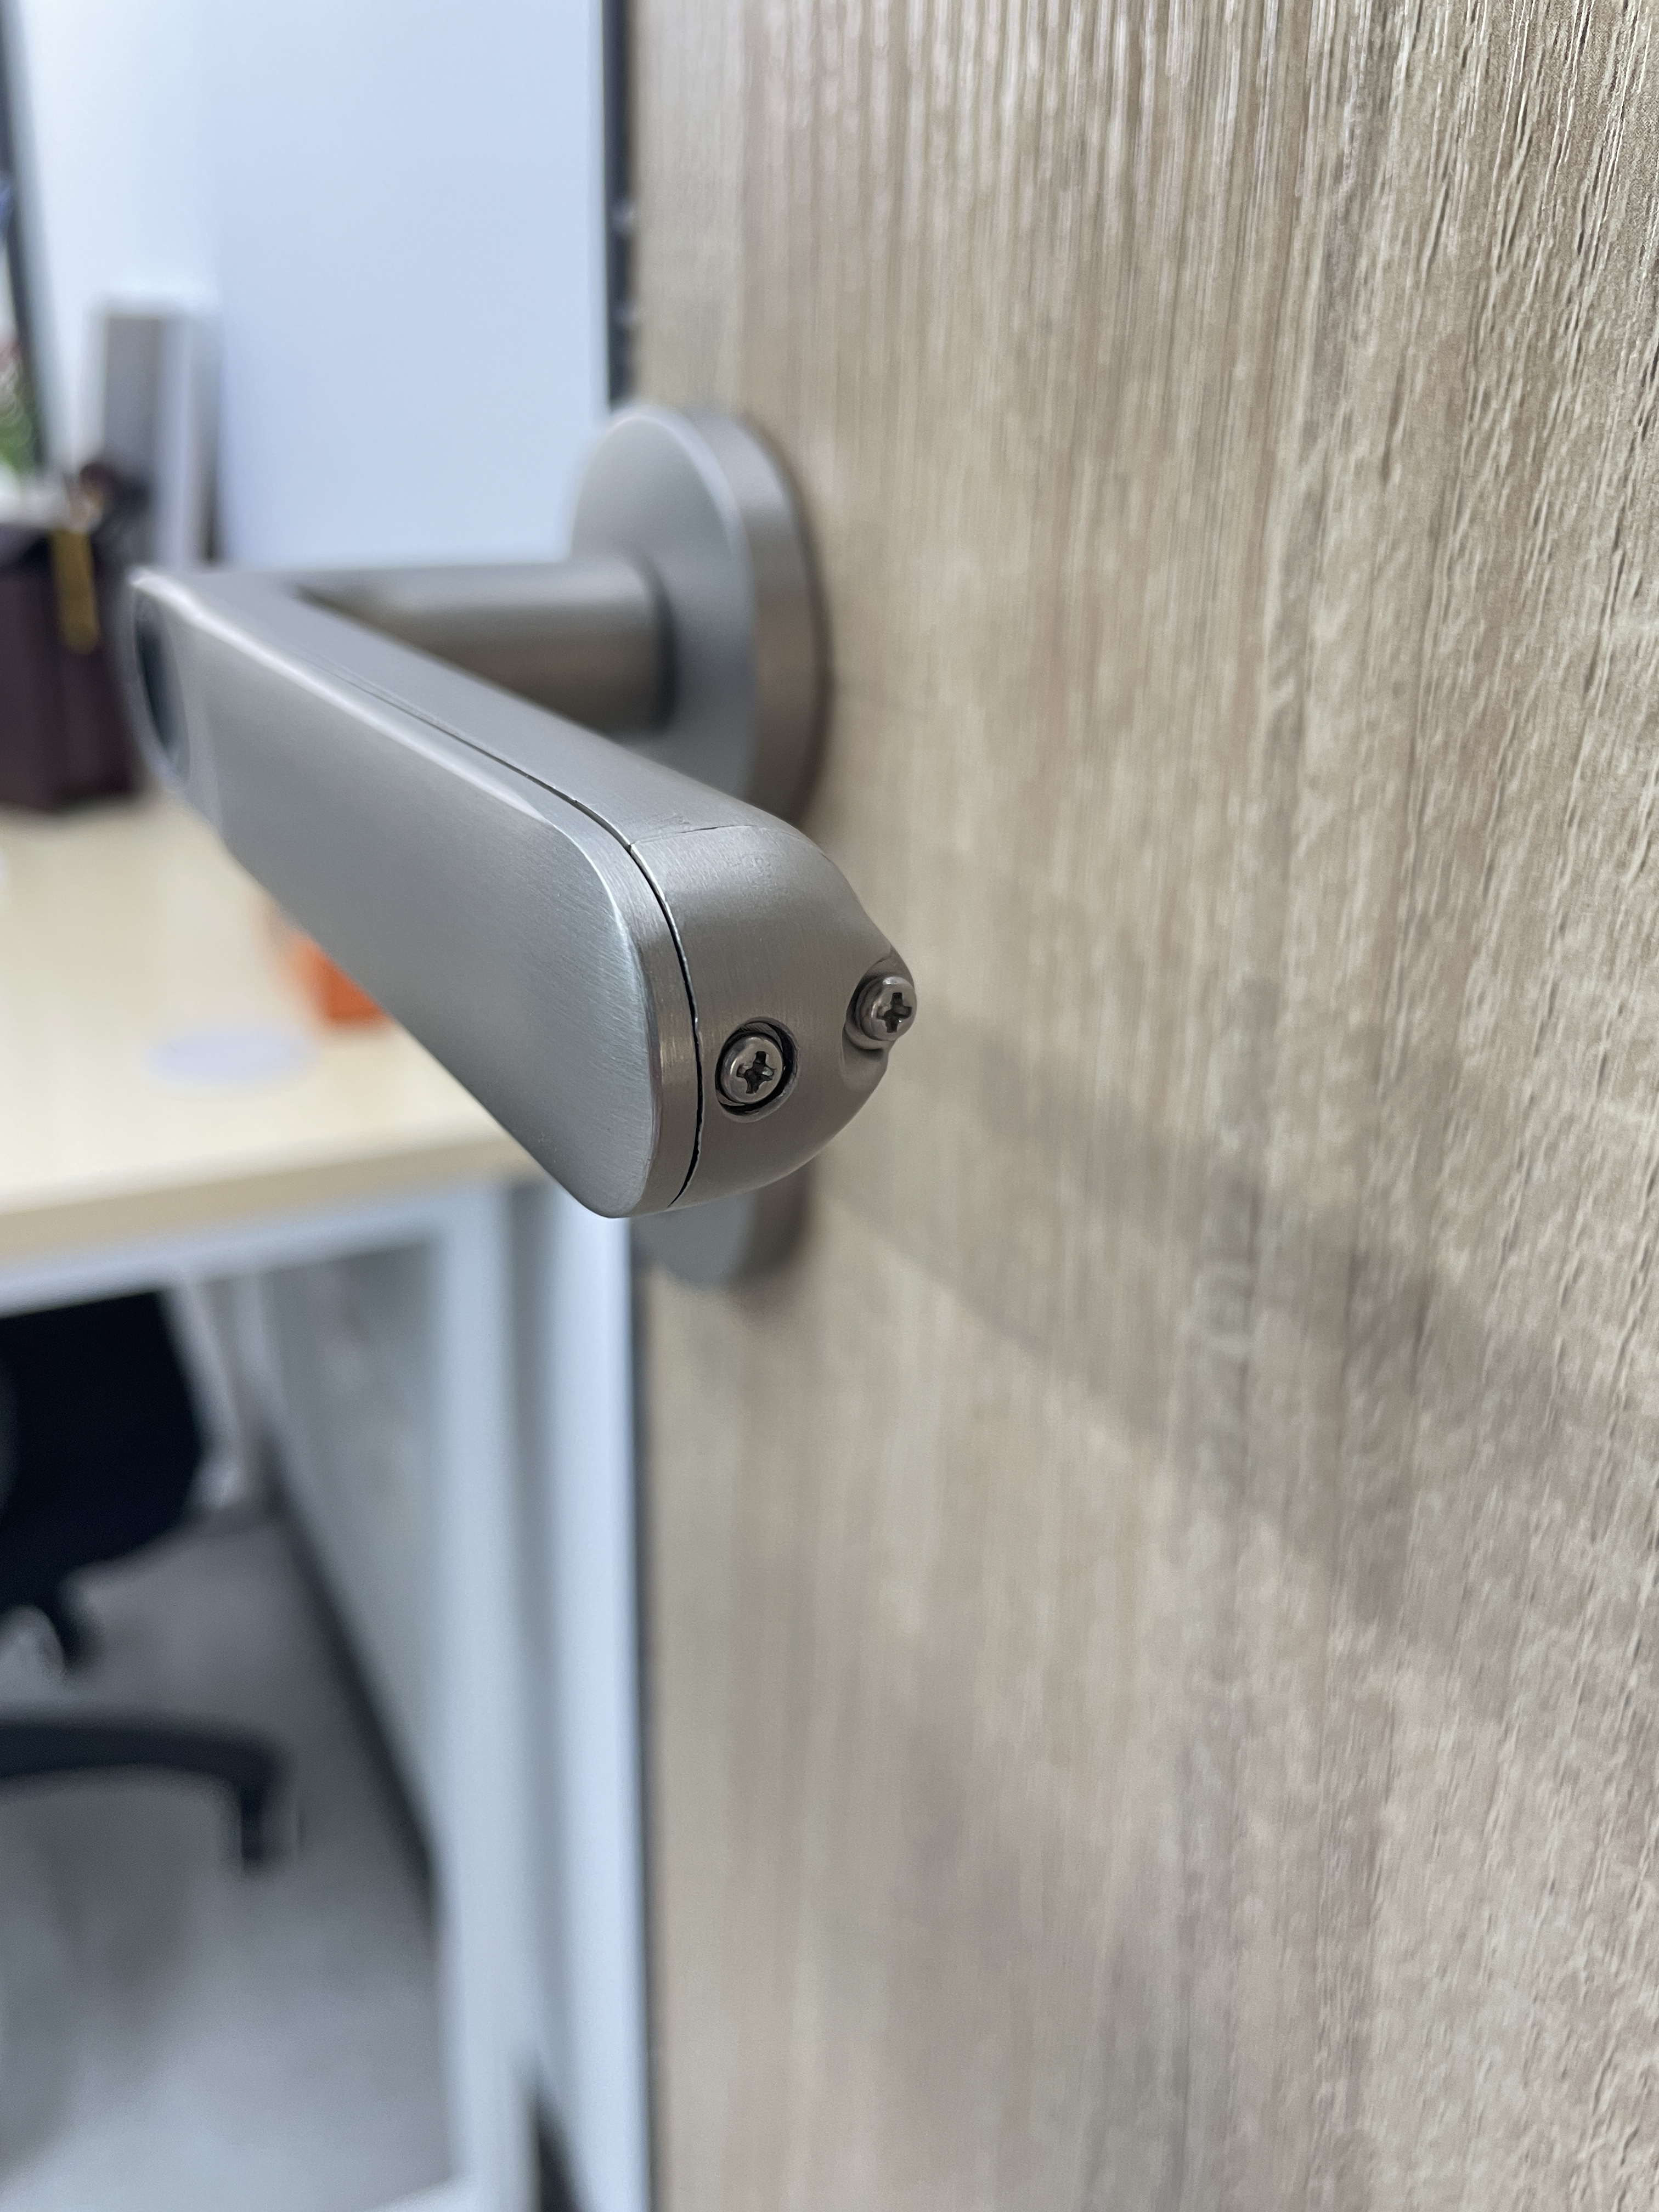 New Security Smart Door Lock，use fingerprint ,password,card to unlock 